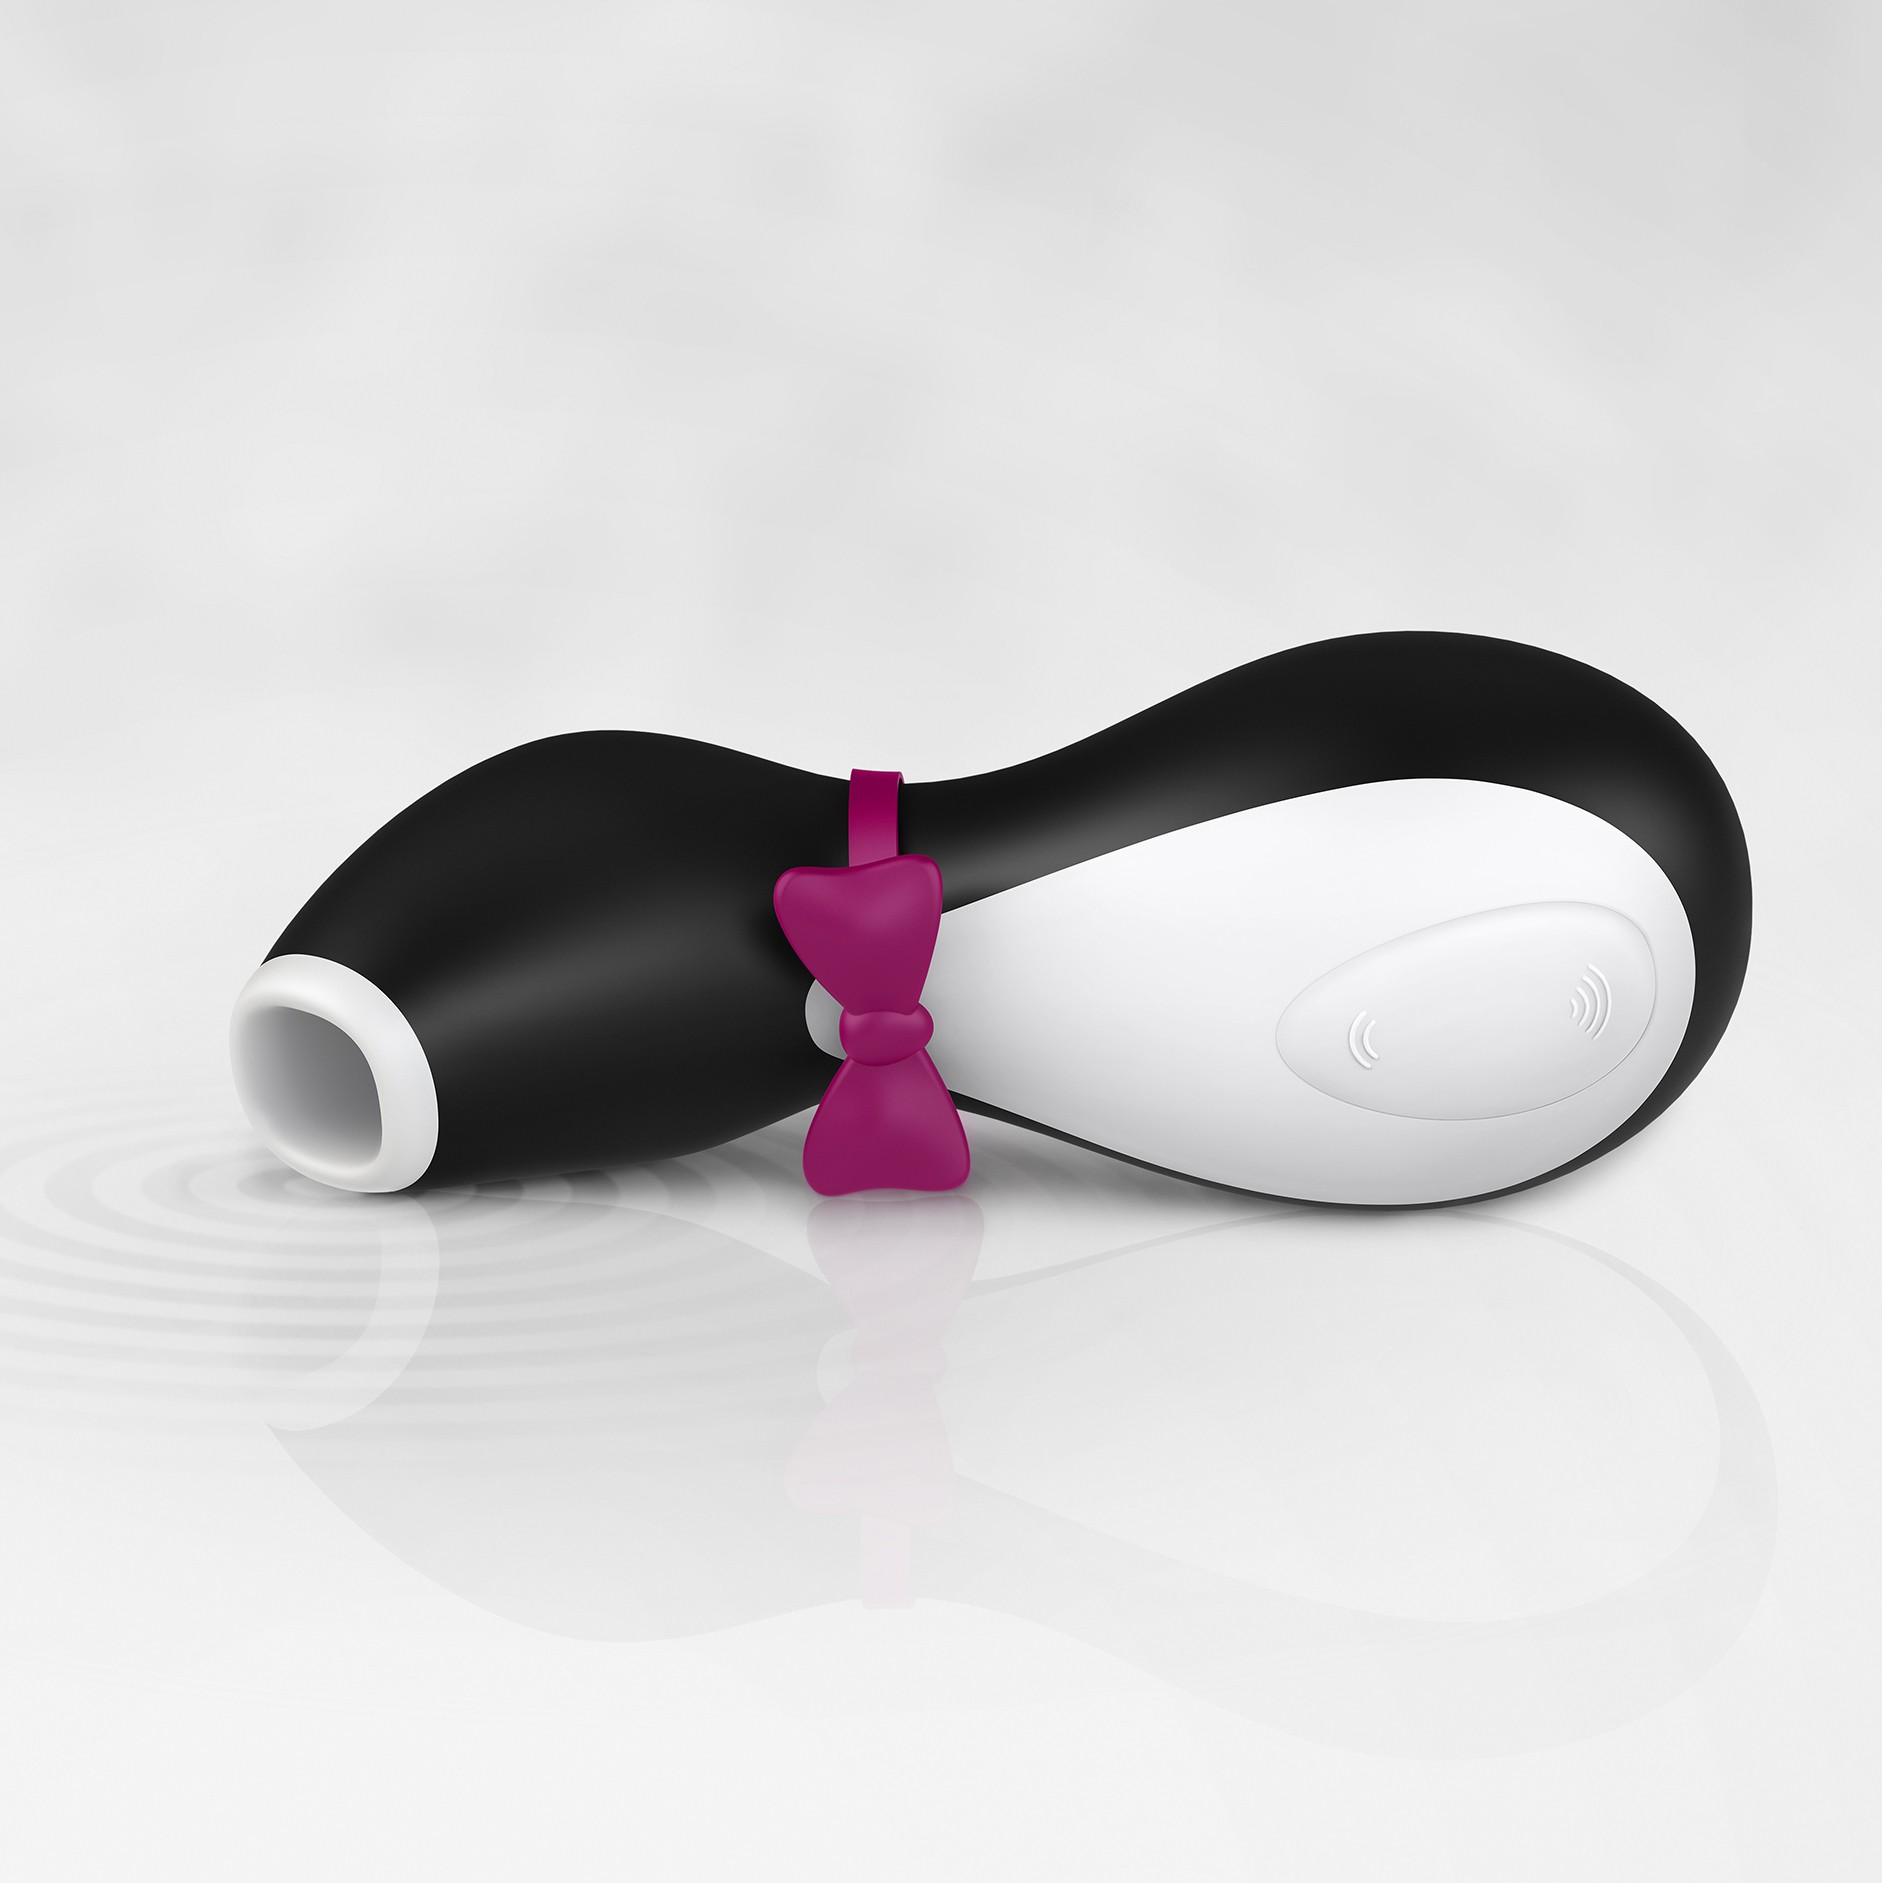 Satisfyer Penguin Air Pulse Emiş Yapabilen Vibratör